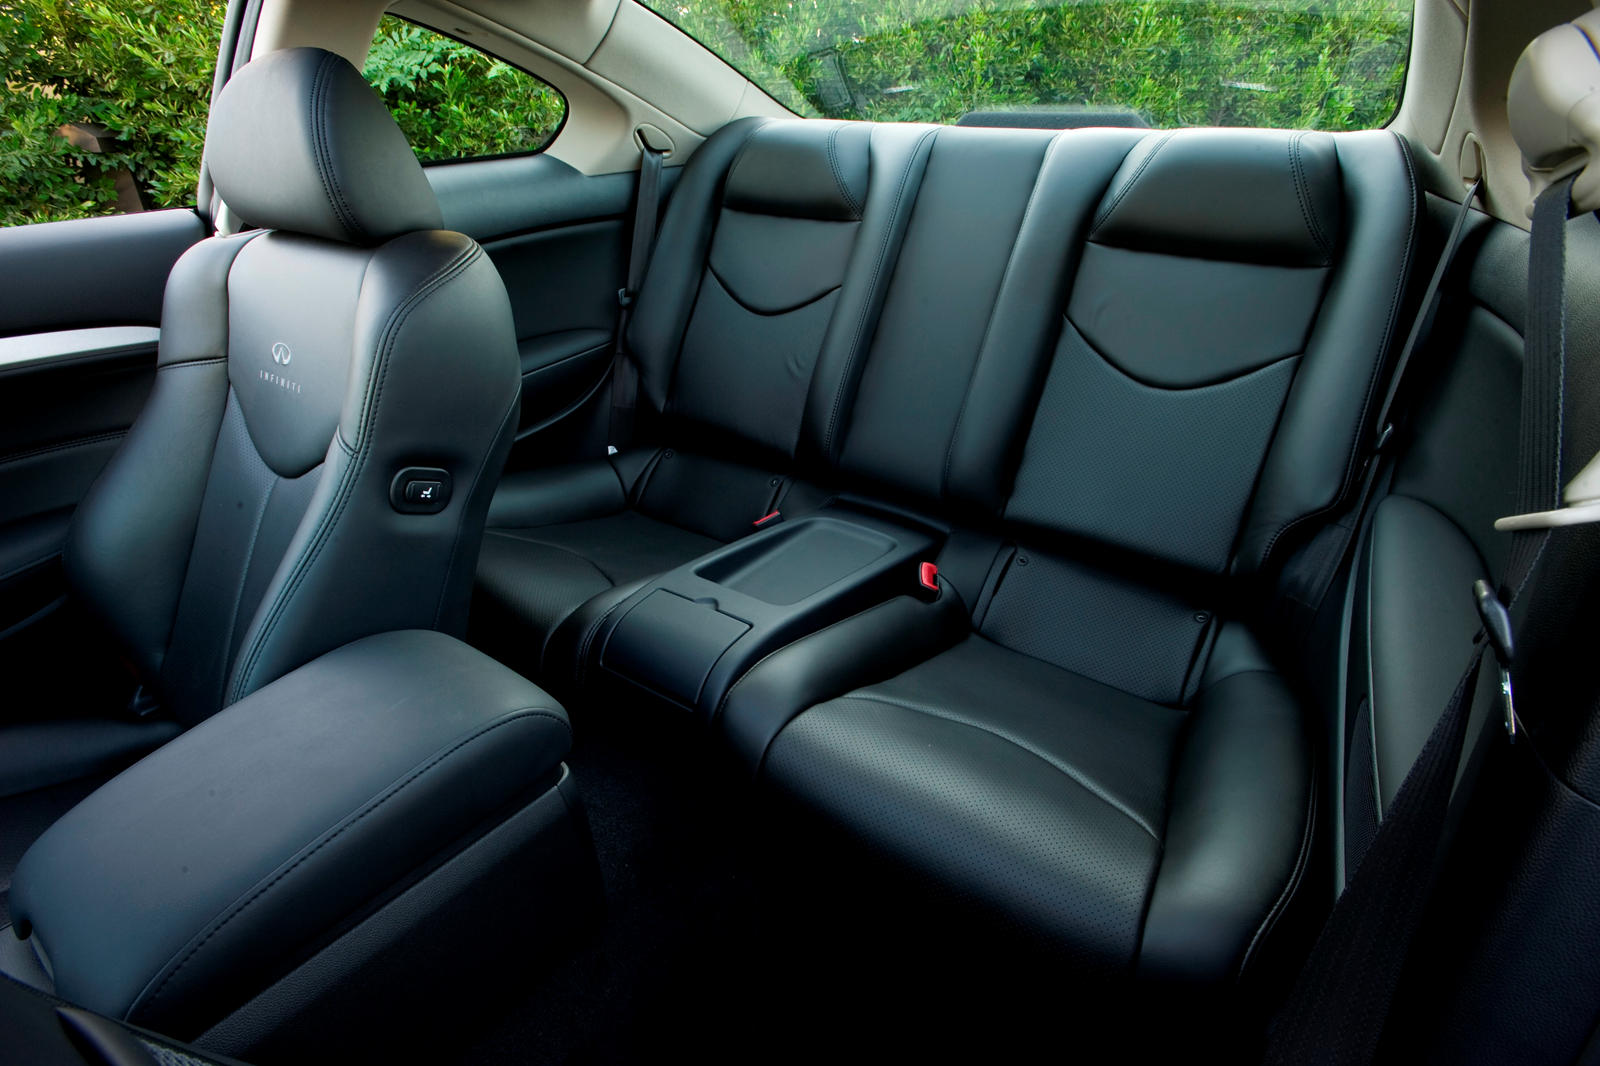 إنفينيتي G37 interior - Seats